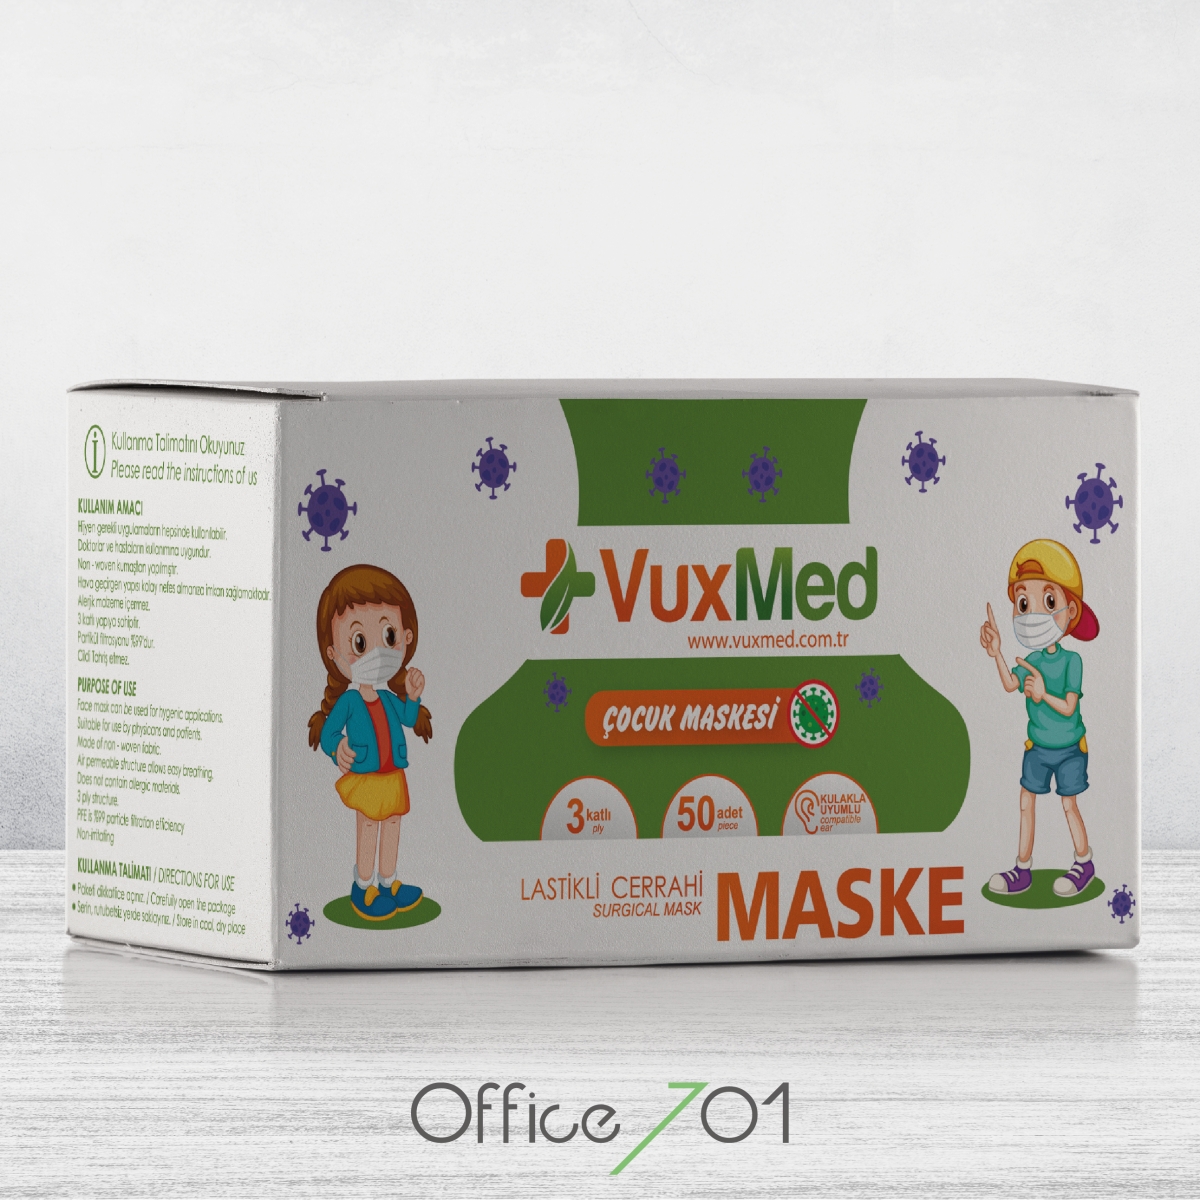 Office701 | Vuxmed | Child Mask Package Design